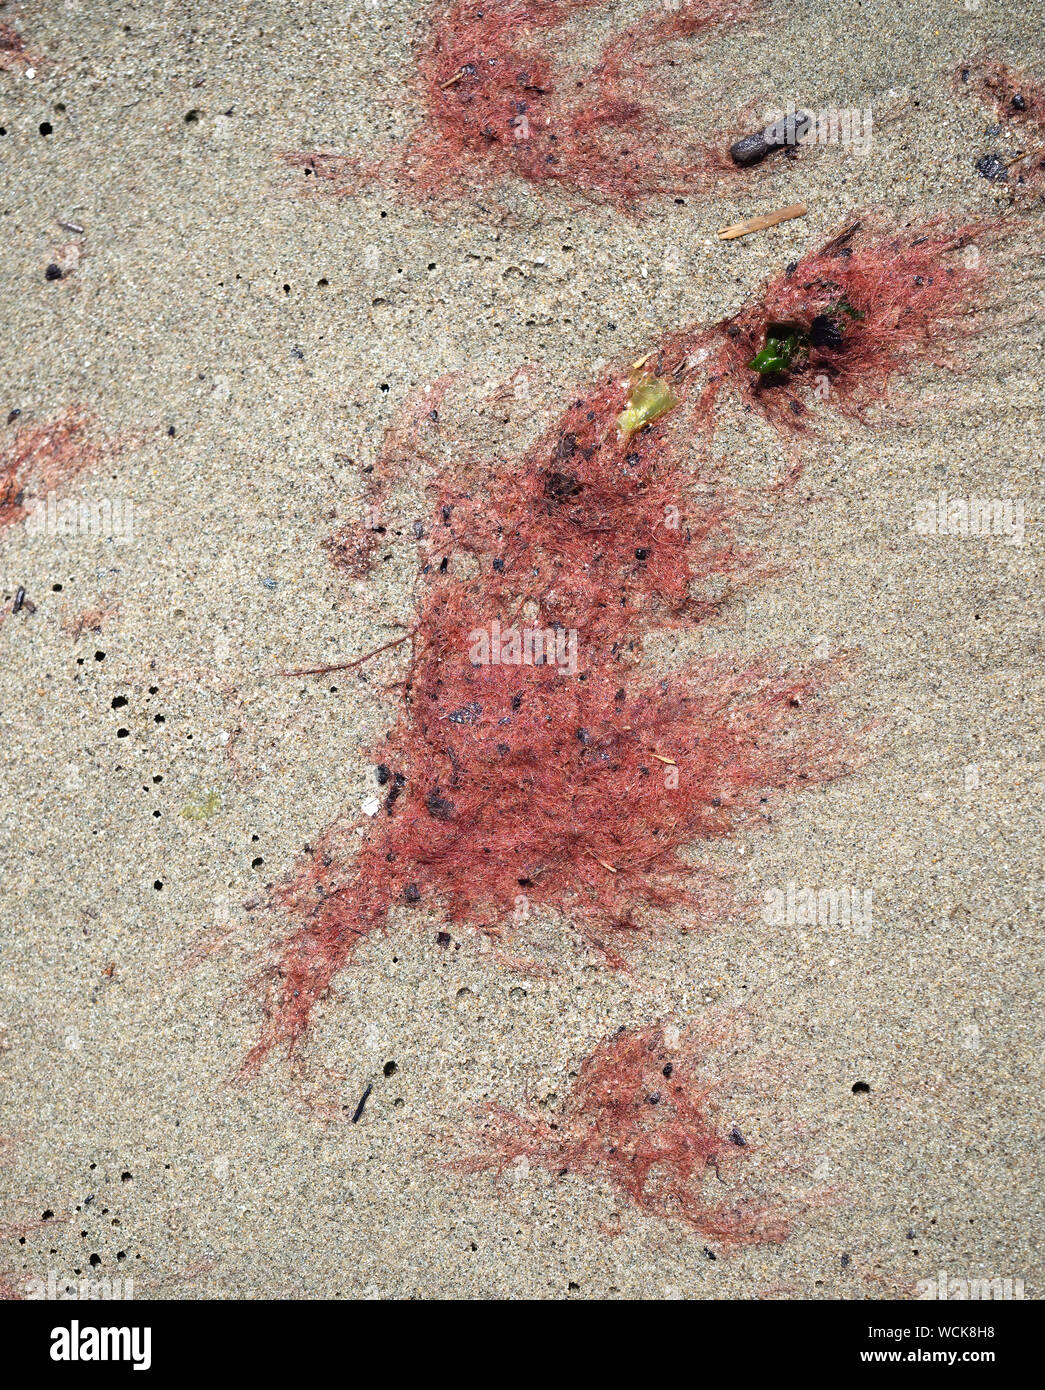 Marée rouge aka d'algues phytoplanctoniques, échoué sur une plage de sable. Banque D'Images